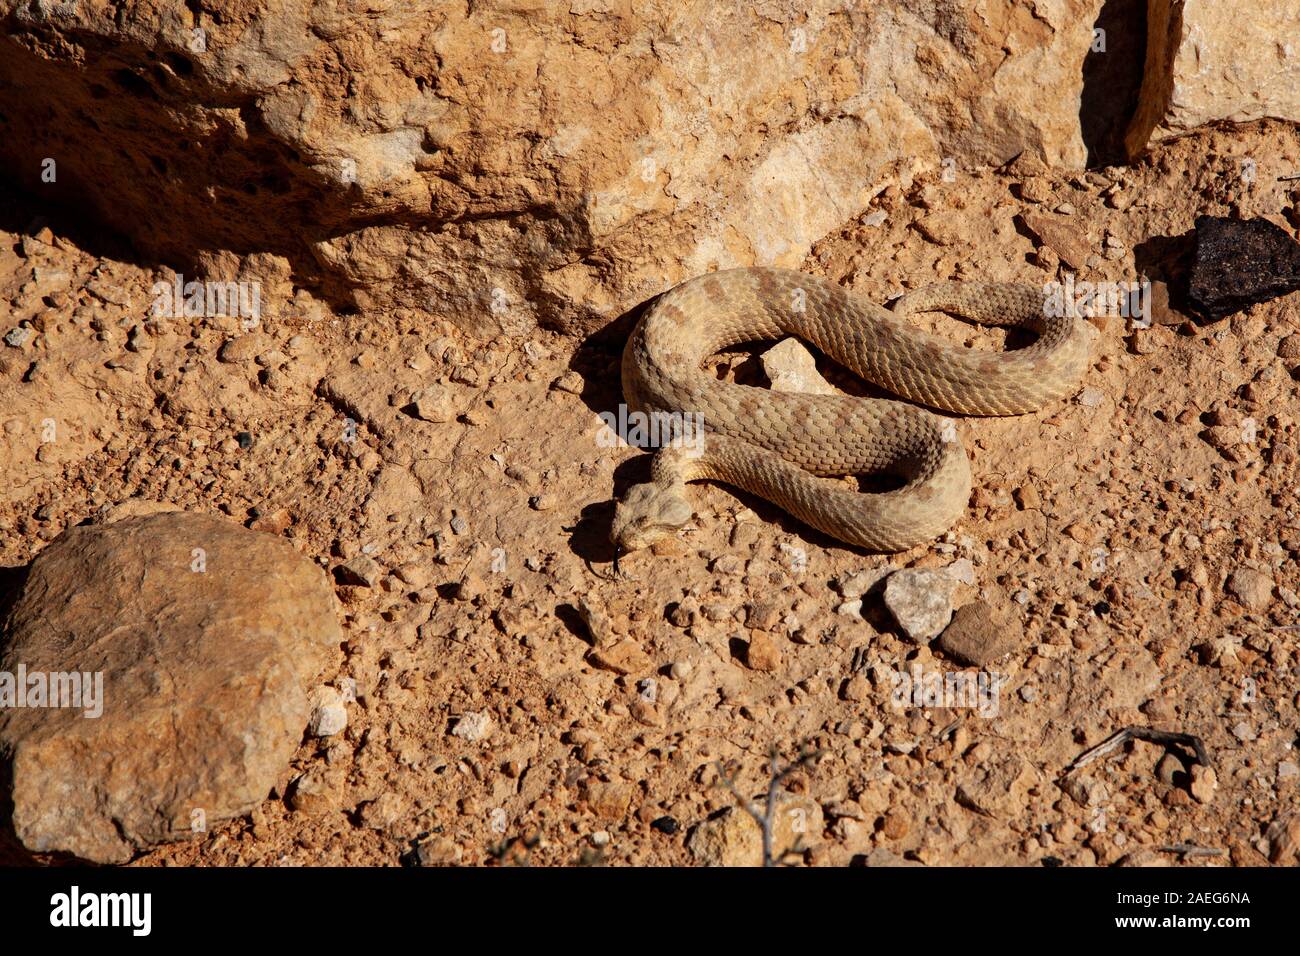 Das Feld horned Viper (Pseudocerastes fieldi), ist eine giftige Viper Arten endemisch in den Wüsten Nordafrikas und des Nahen Ostens. In Israel fotografiert. Stockfoto